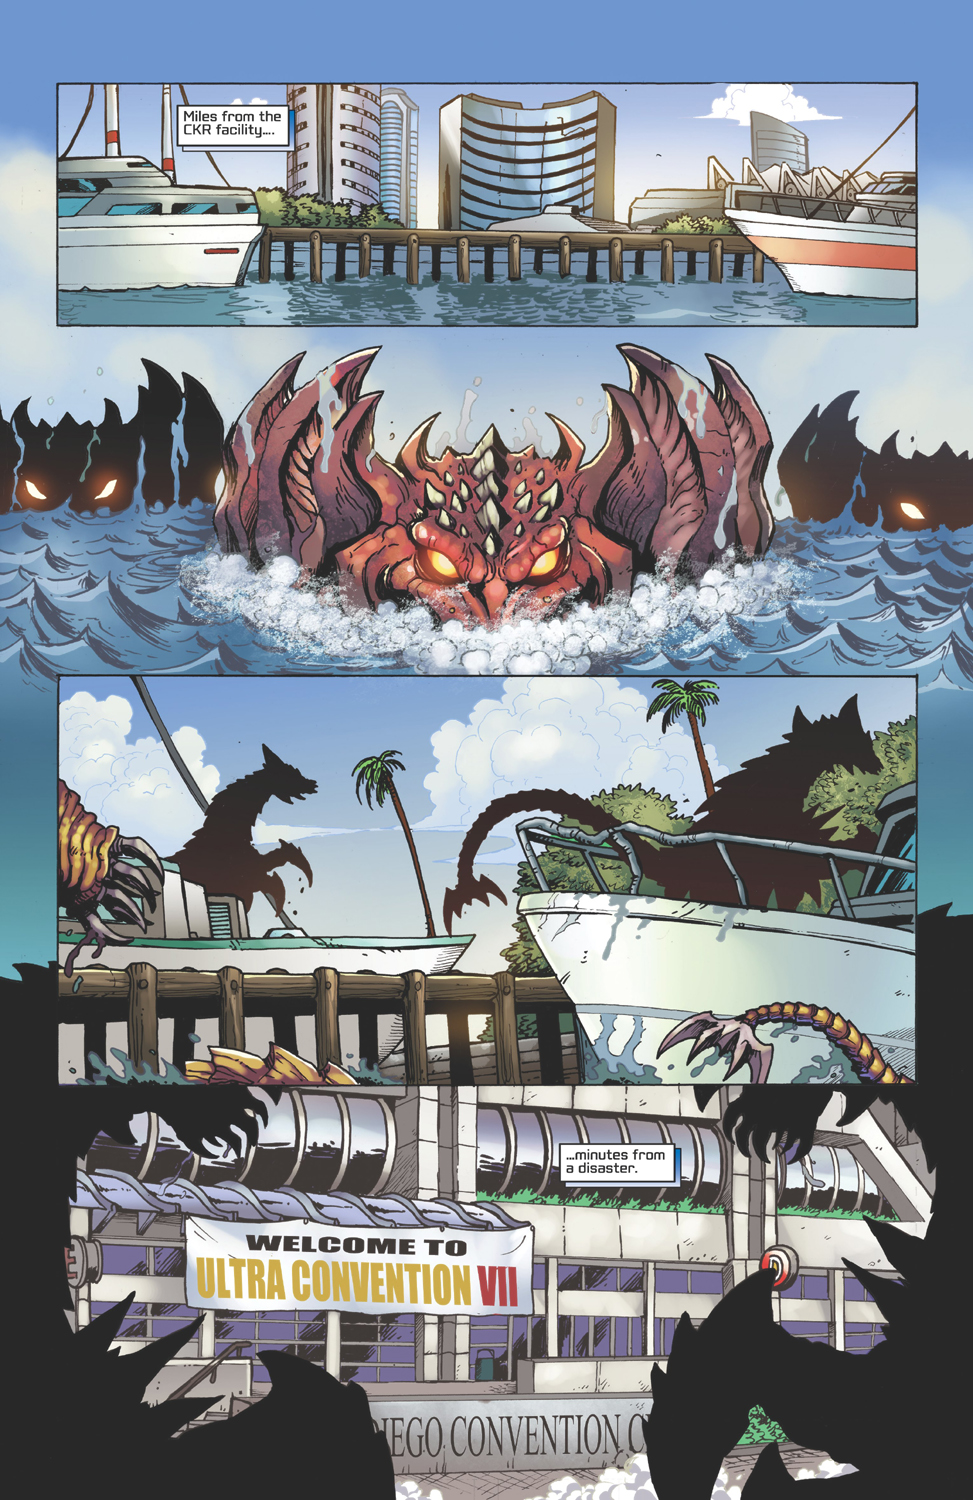 Godzilla: Rulers of Earth #3  Wikizilla, the kaiju encyclopedia